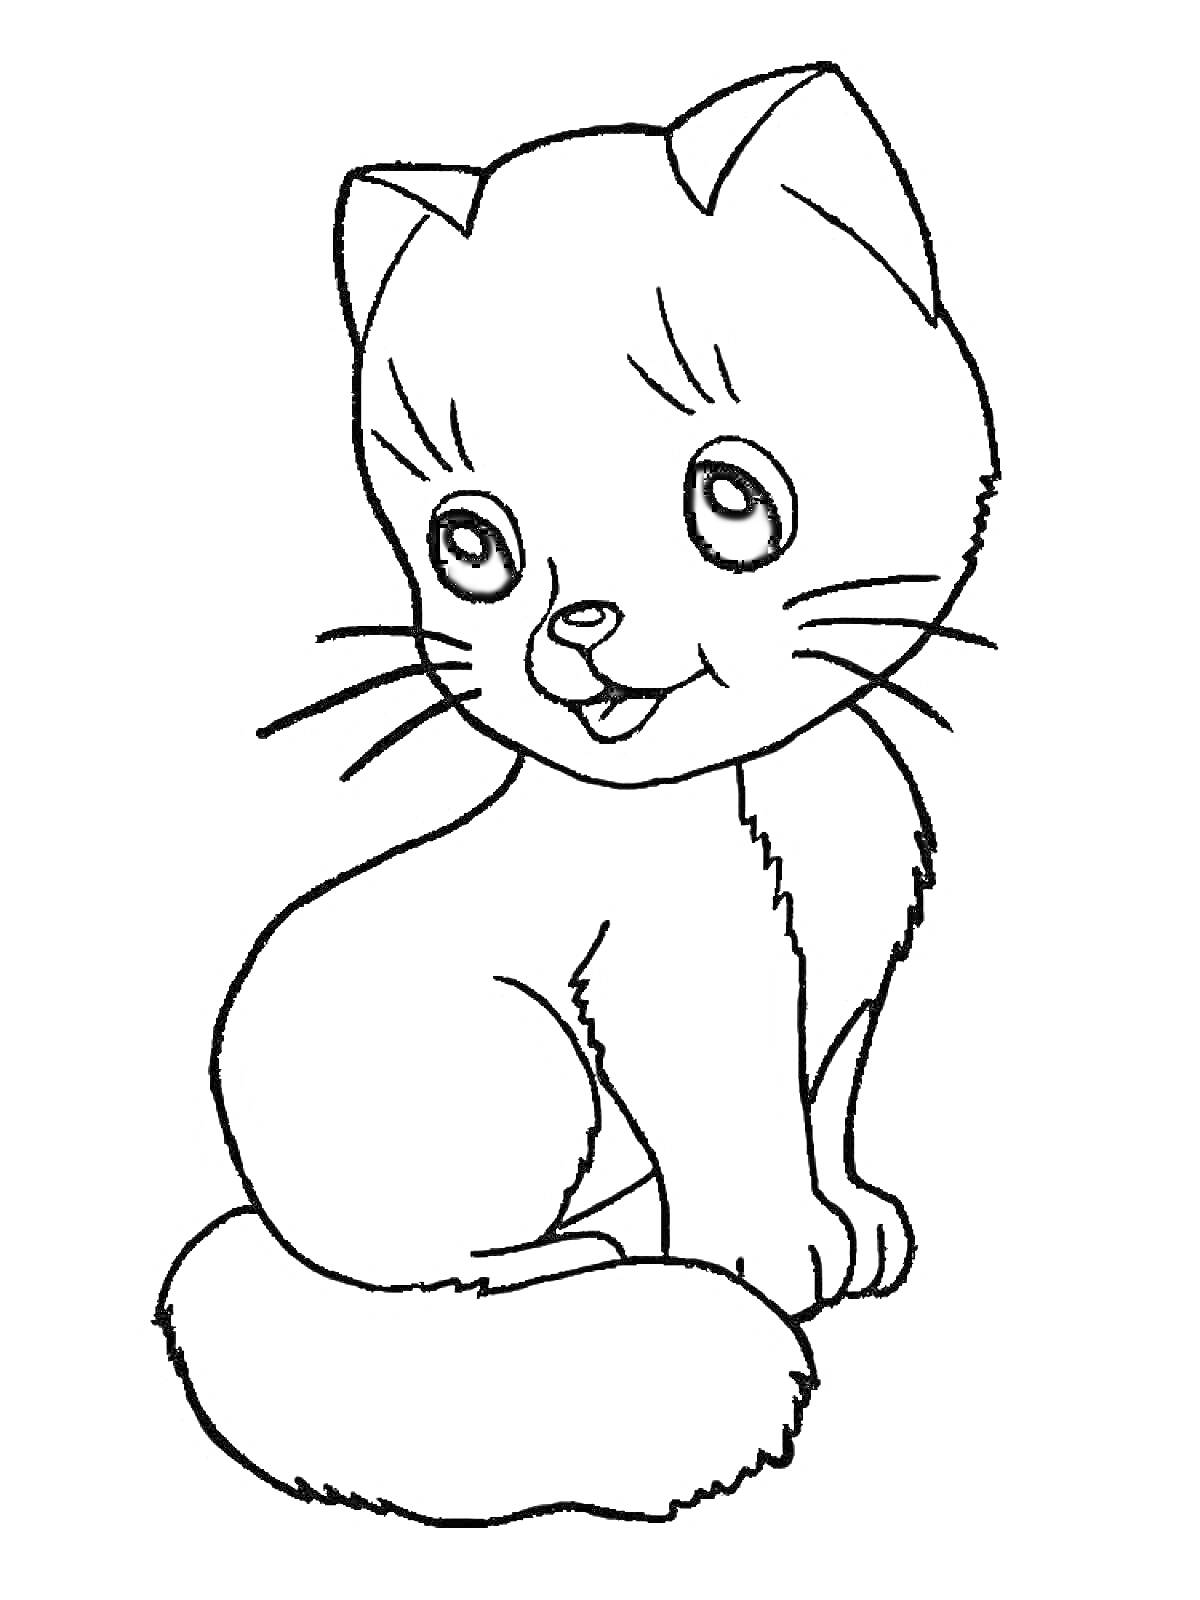 Раскраска Котик сидящий с высунутым языком